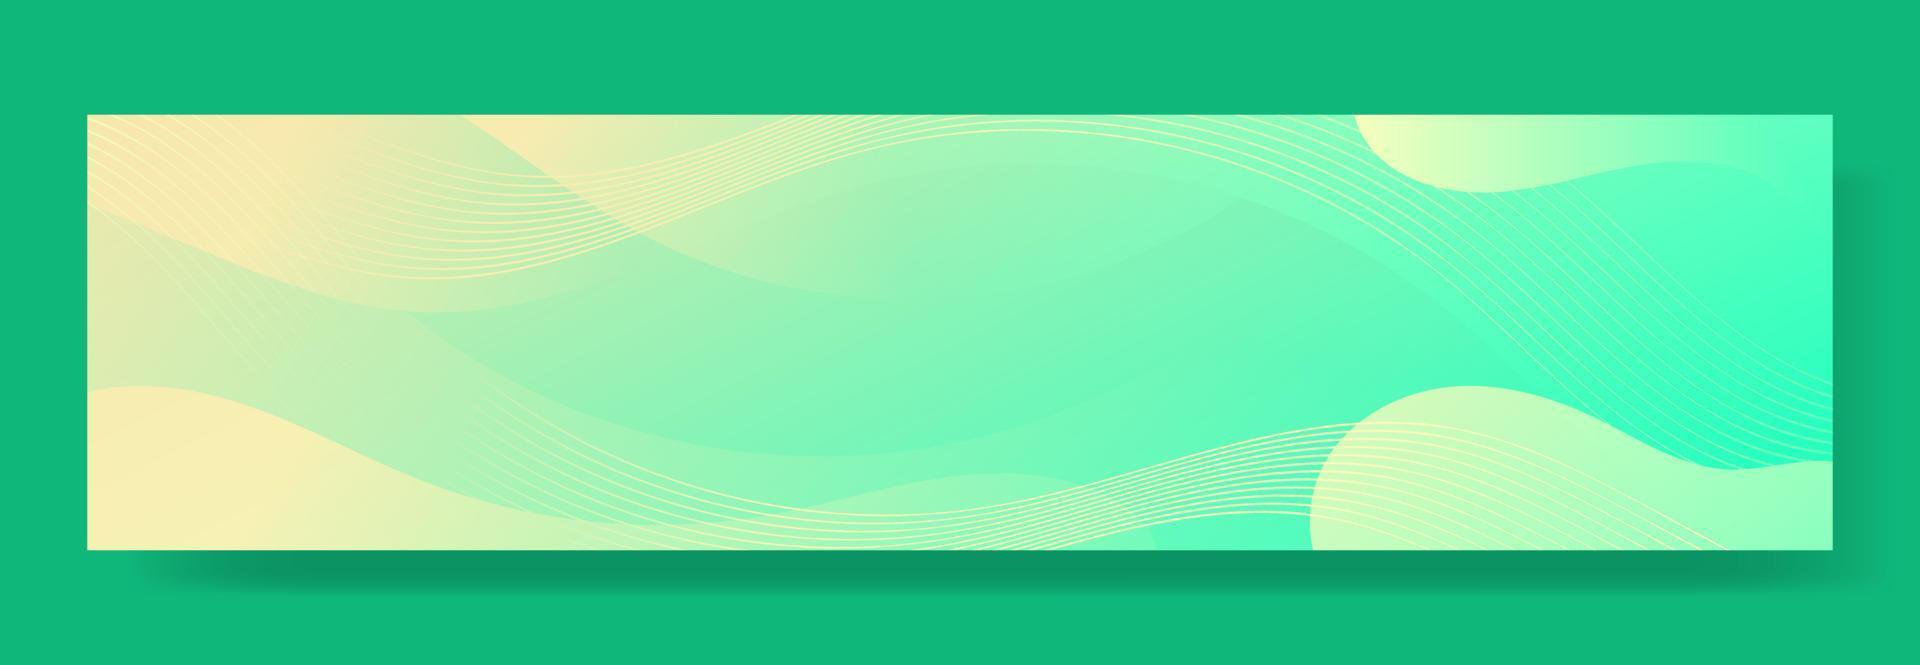 abstrakt grön vätska våg banner mall vektor